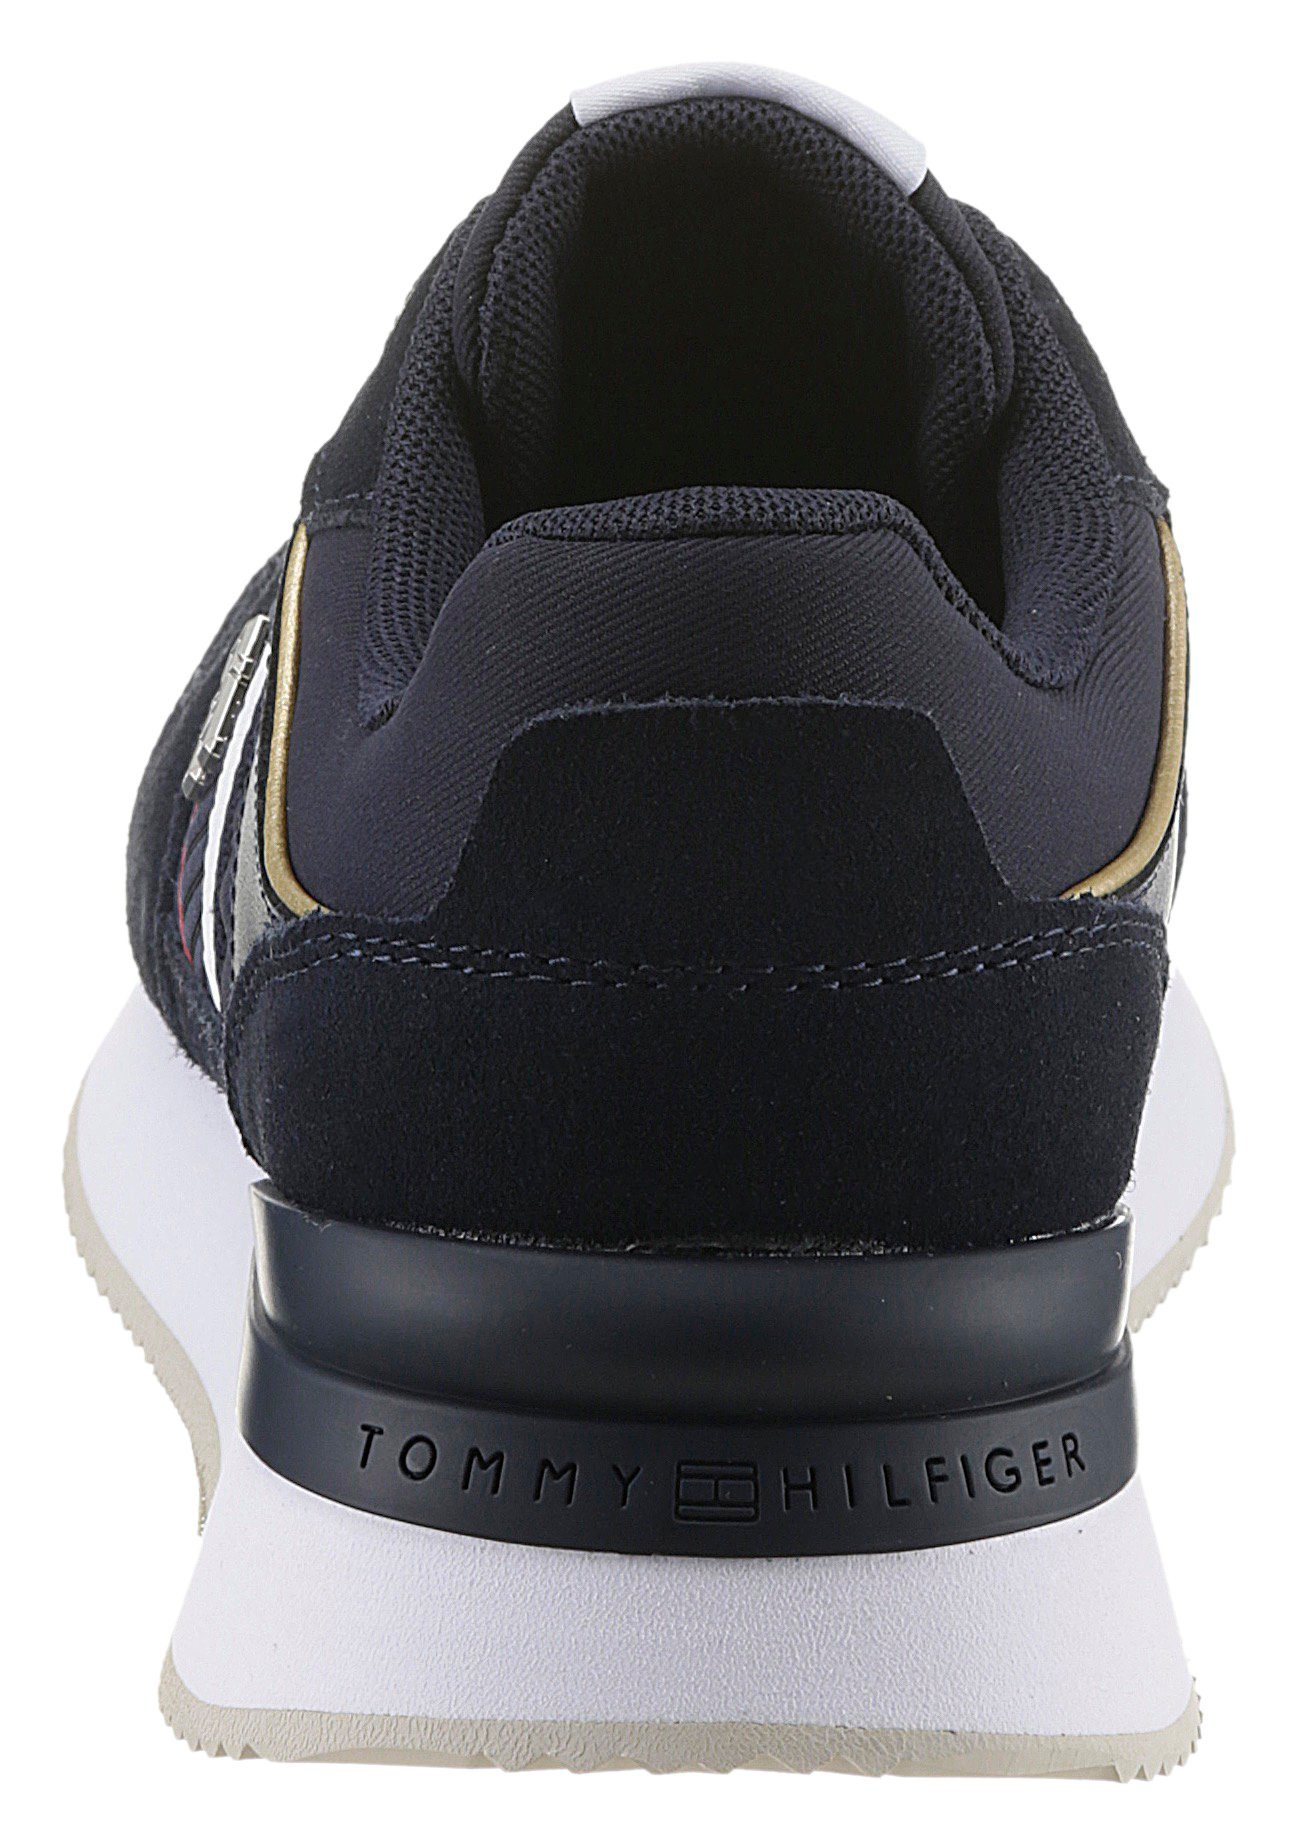 GOLD Tommy CORP Keilsneaker RUNNER Hilfiger goldfarbenen WEBBING mit Einsätzen